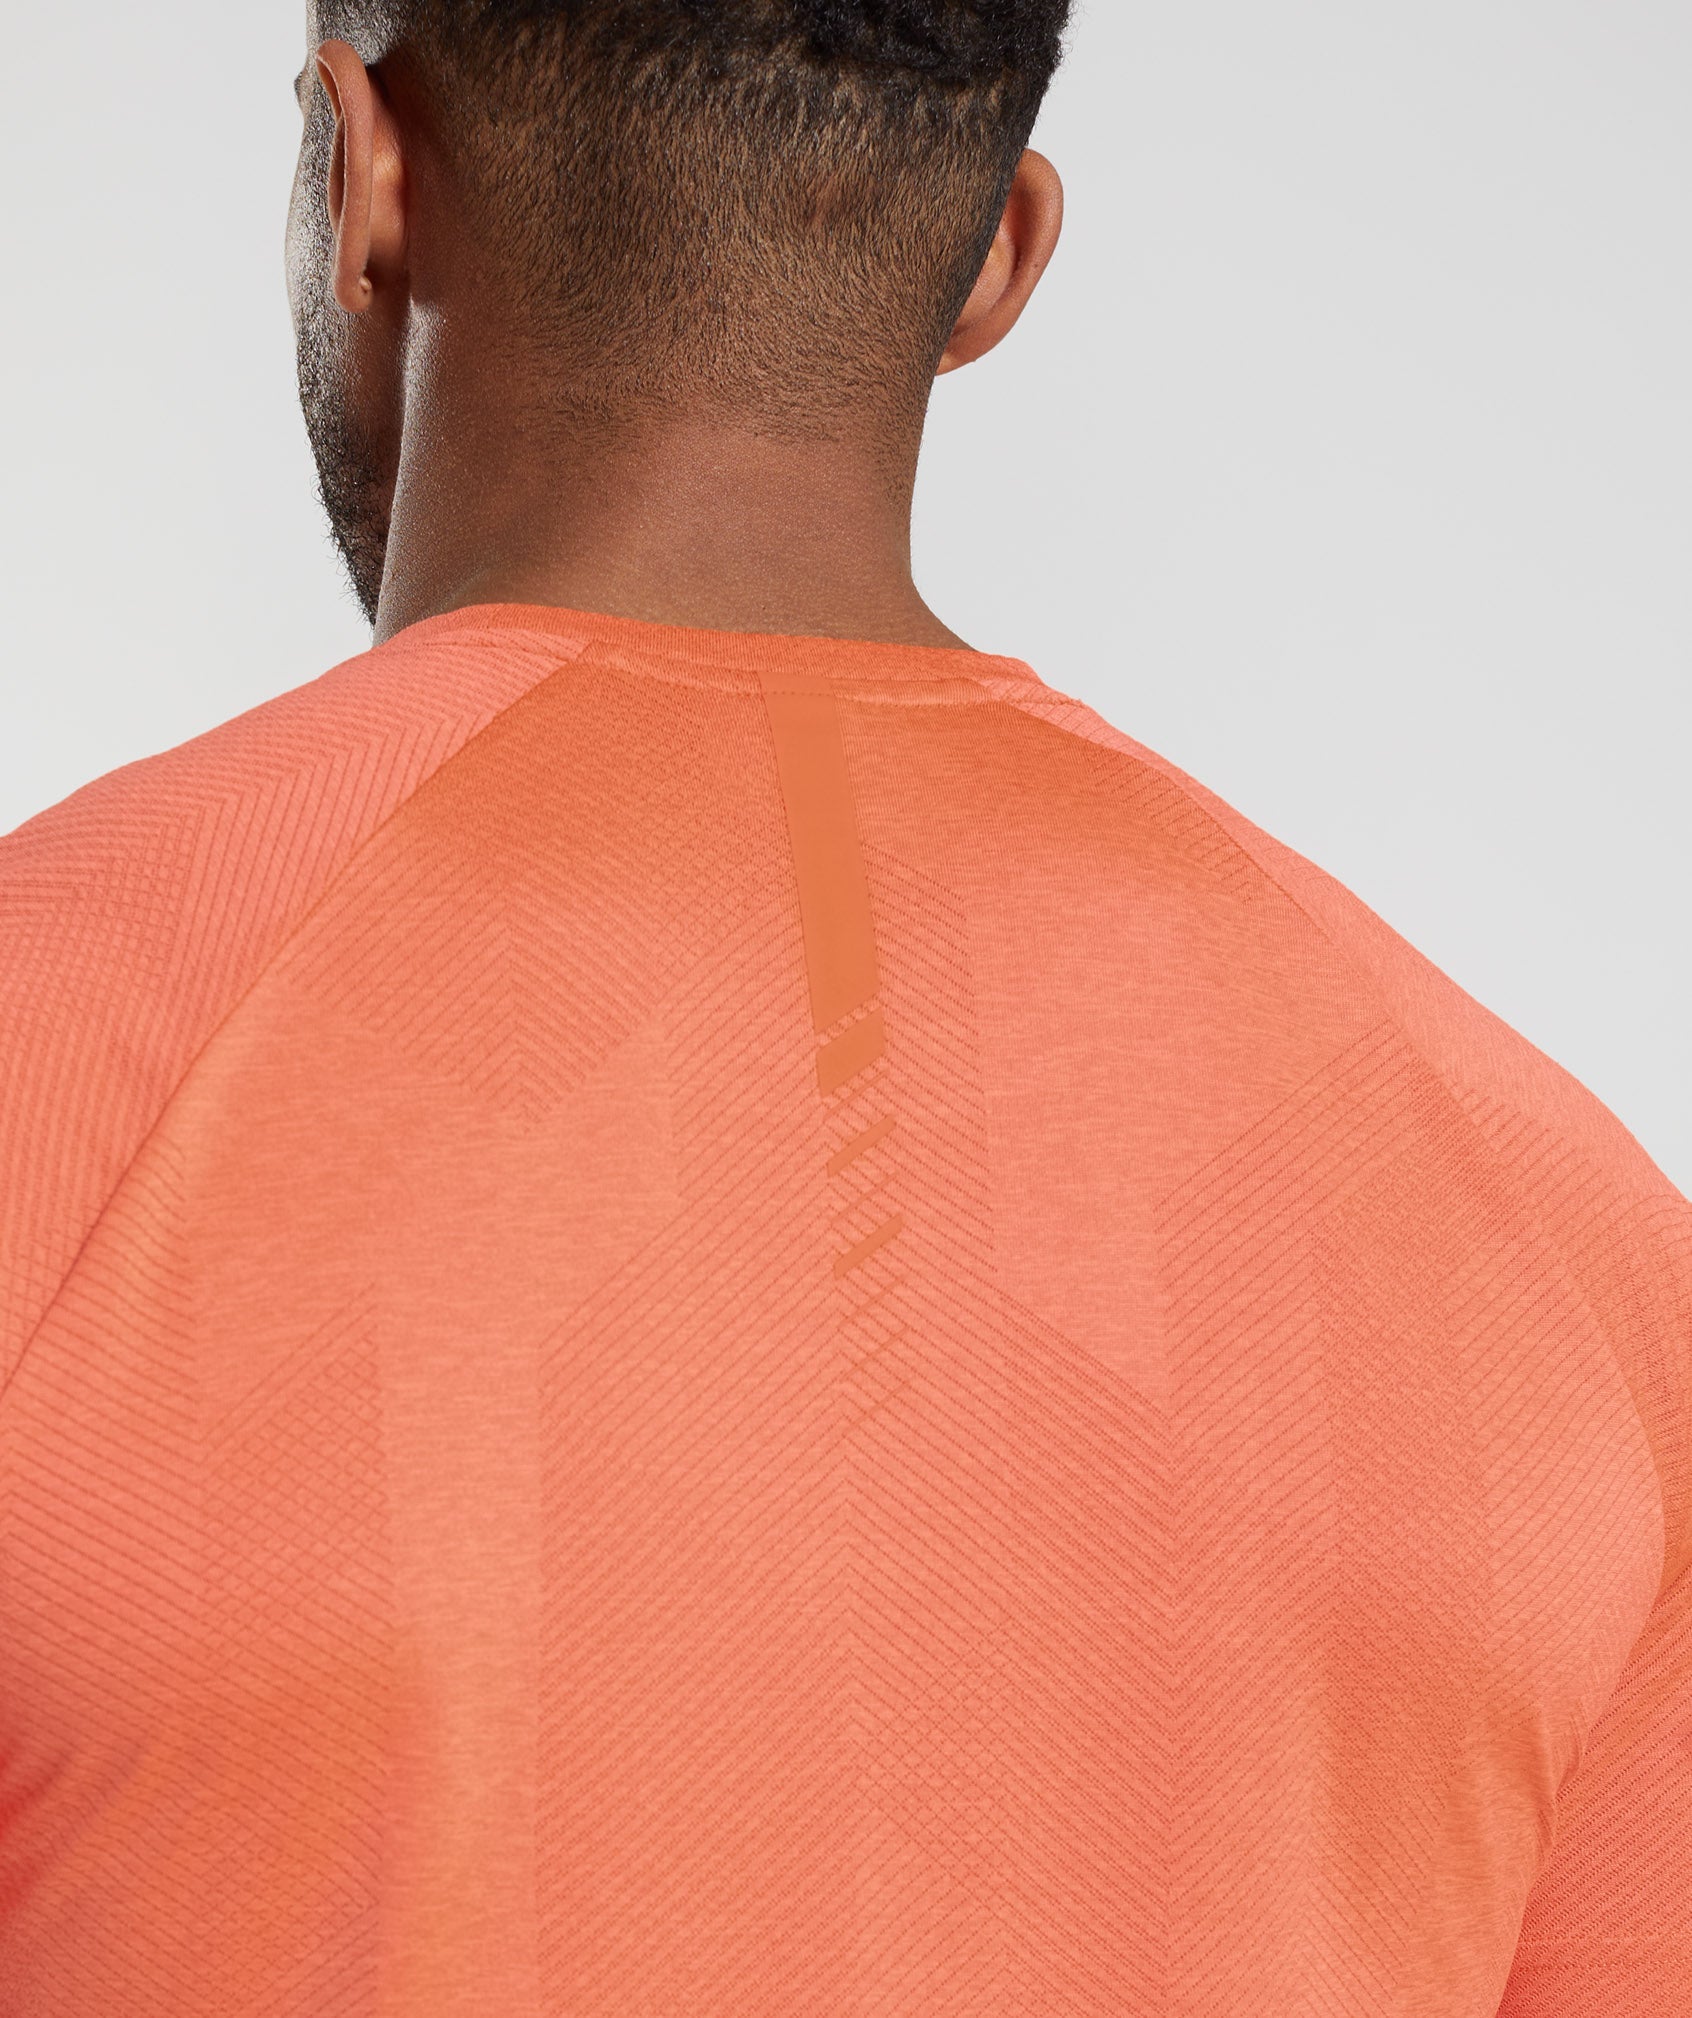 Apex T-Shirt in Solstice Orange/Fluo Peach